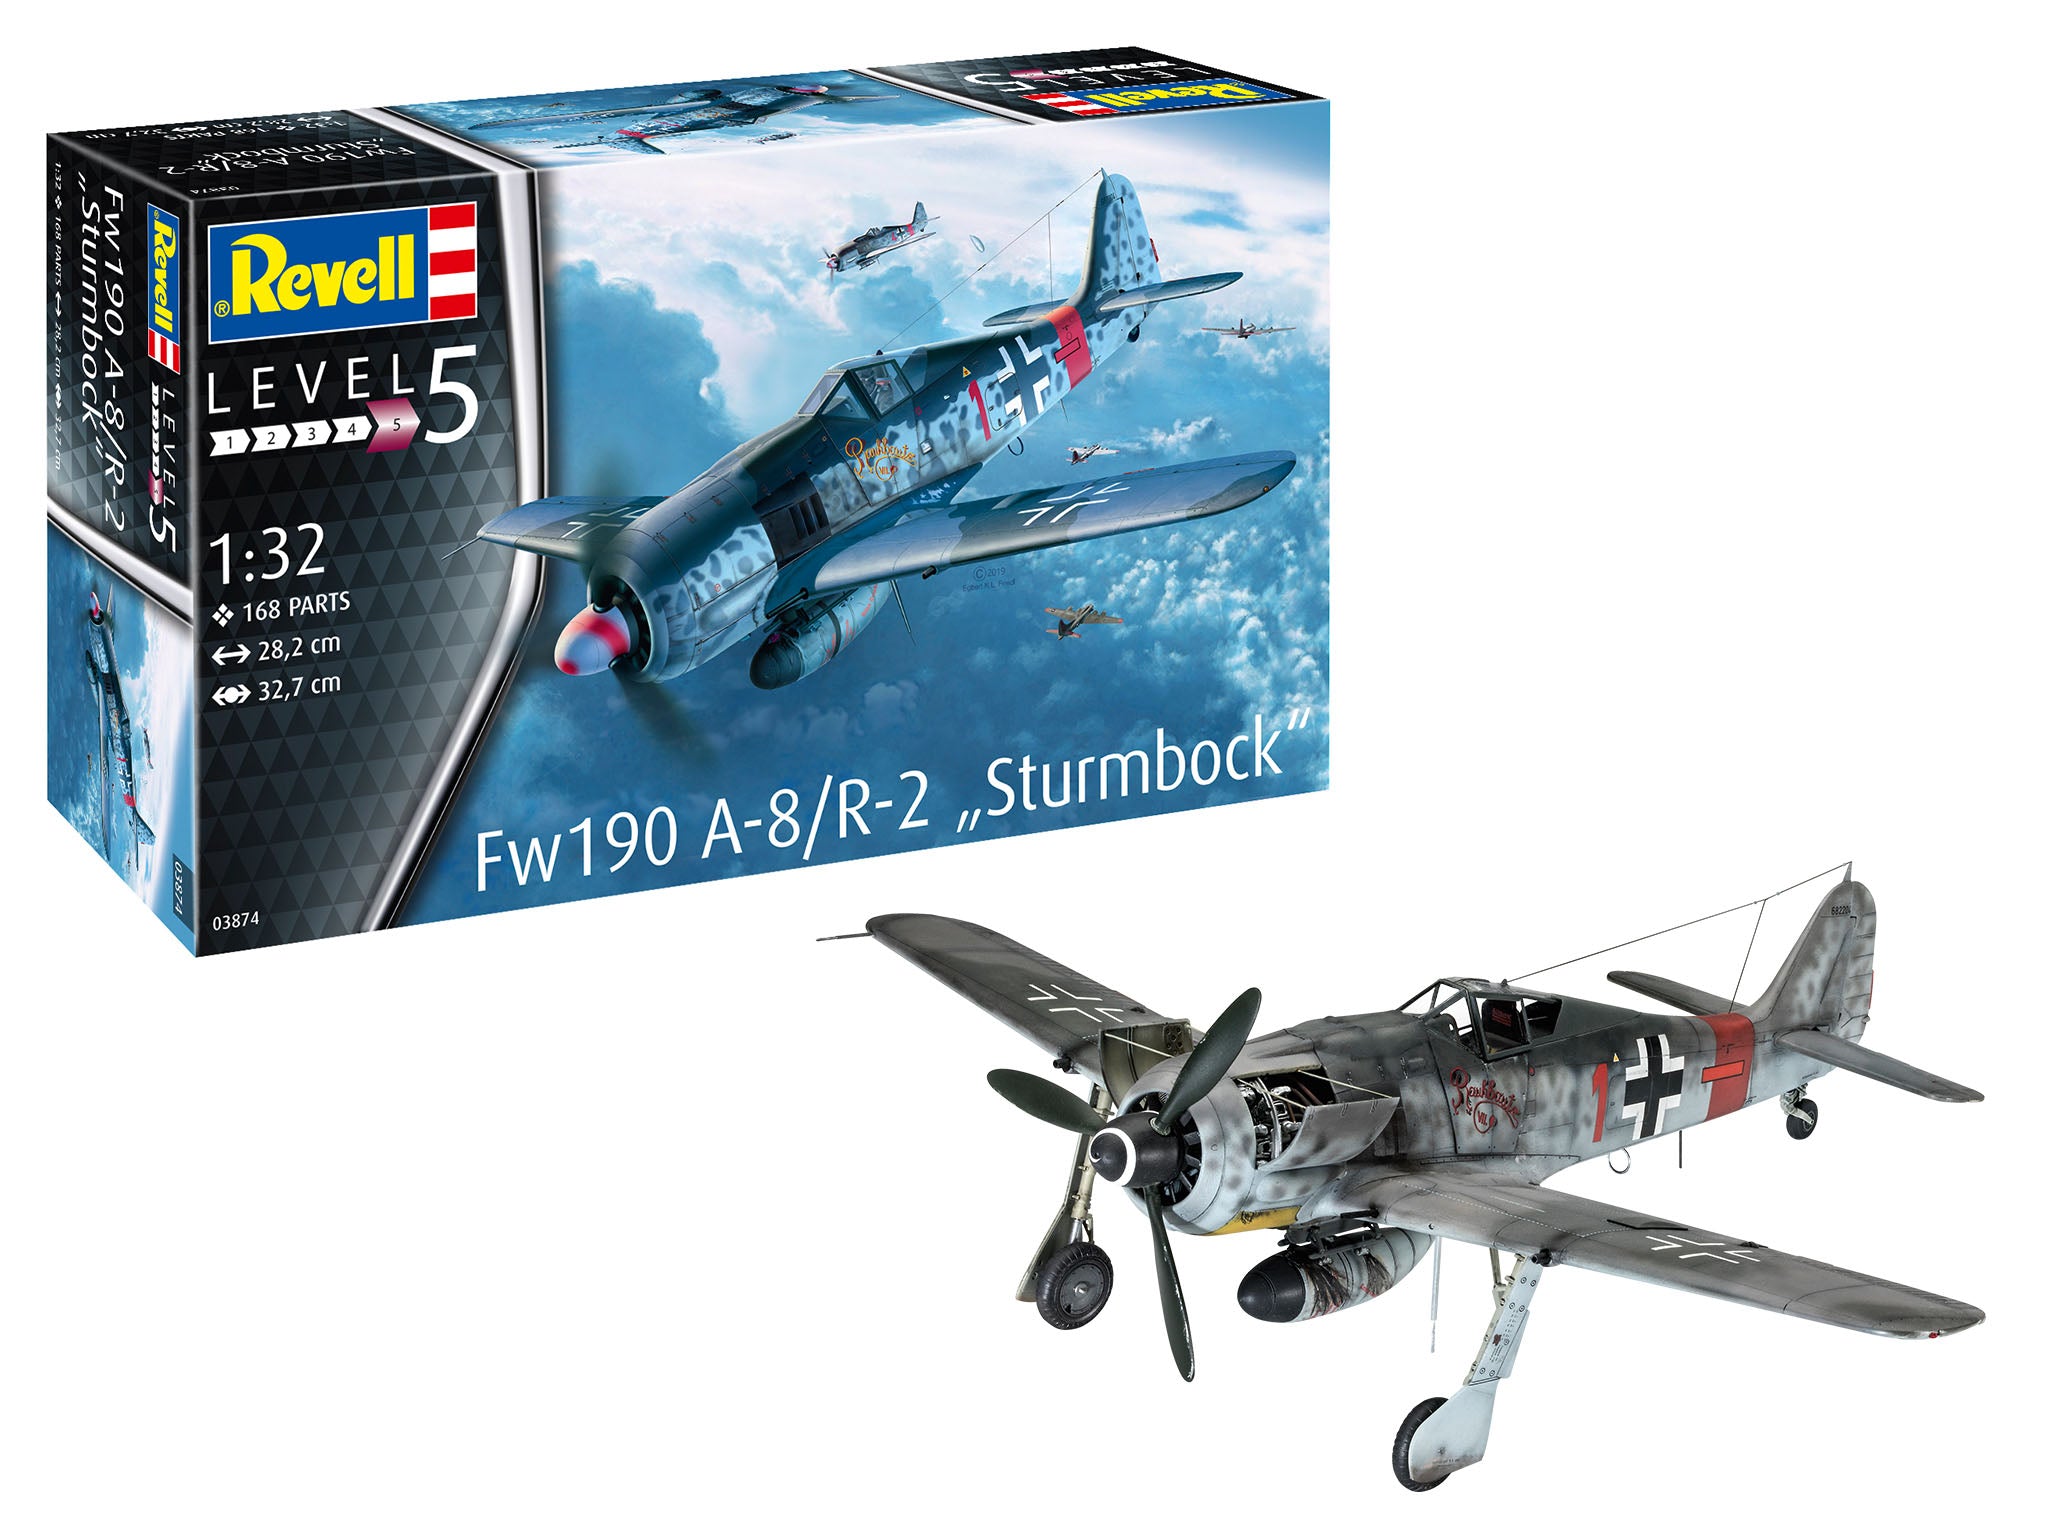 Plane Model Kit Revell Fw190 A-8/R-2 Sturmbock 1:32